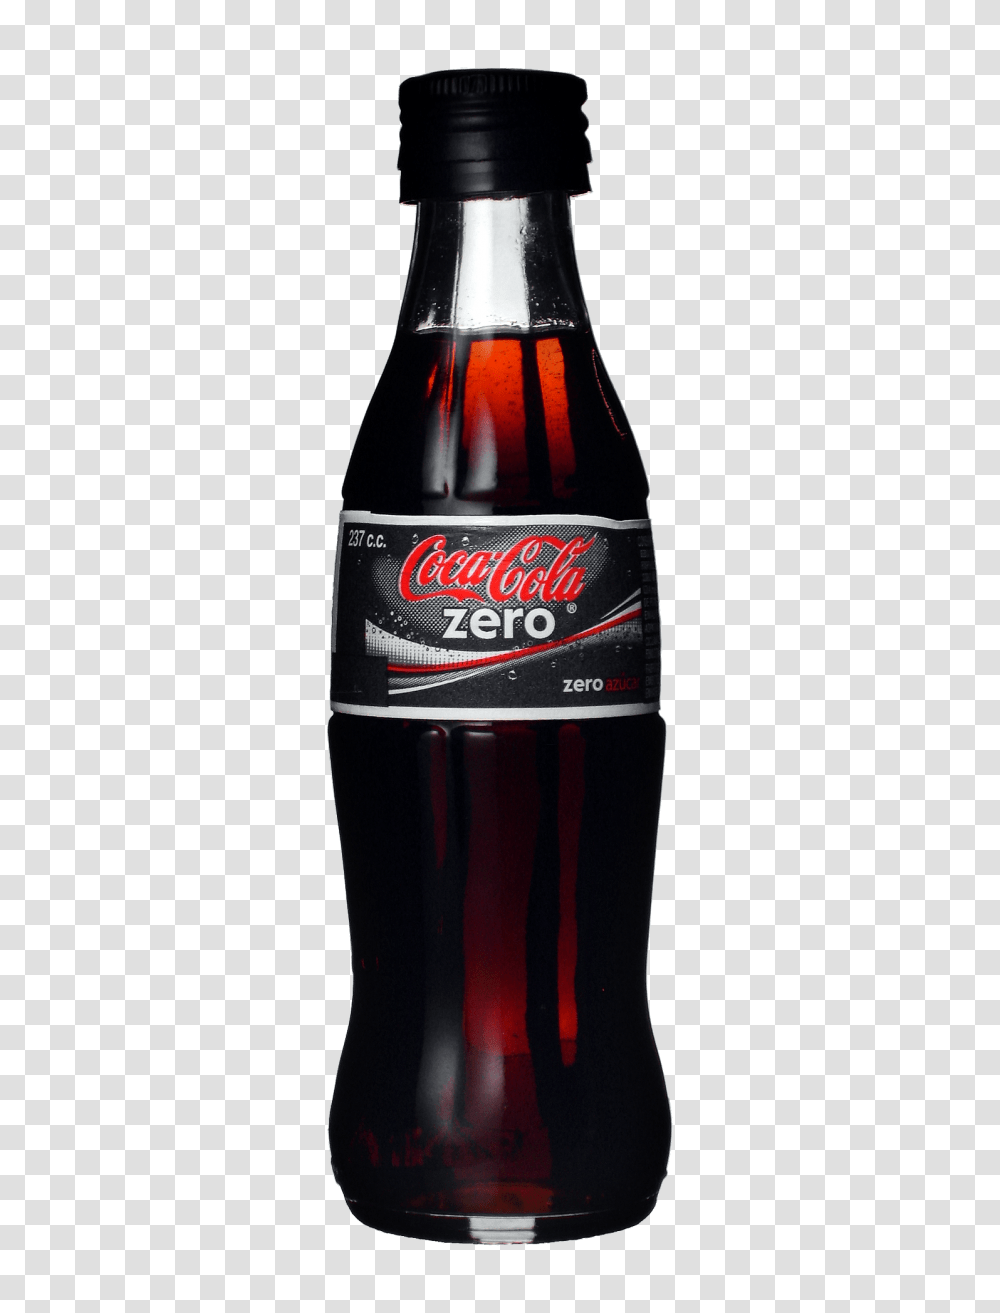 Coca Cola Bottle Image Download Free, Beverage, Drink, Soda, Coke Transparent Png